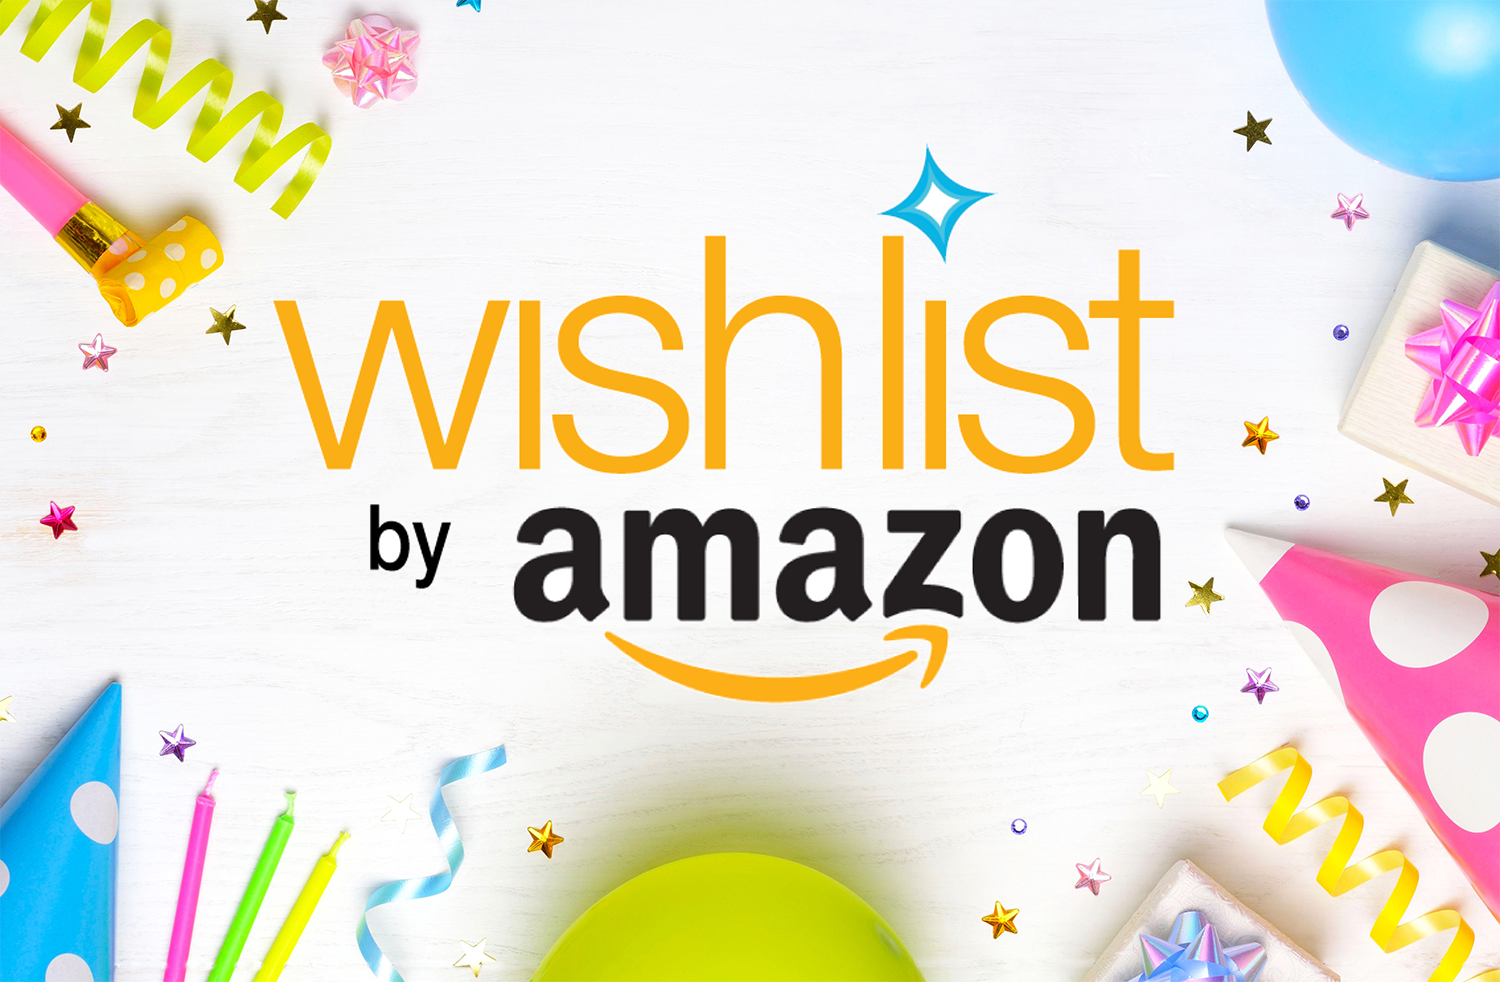 Amazon birthday wish list